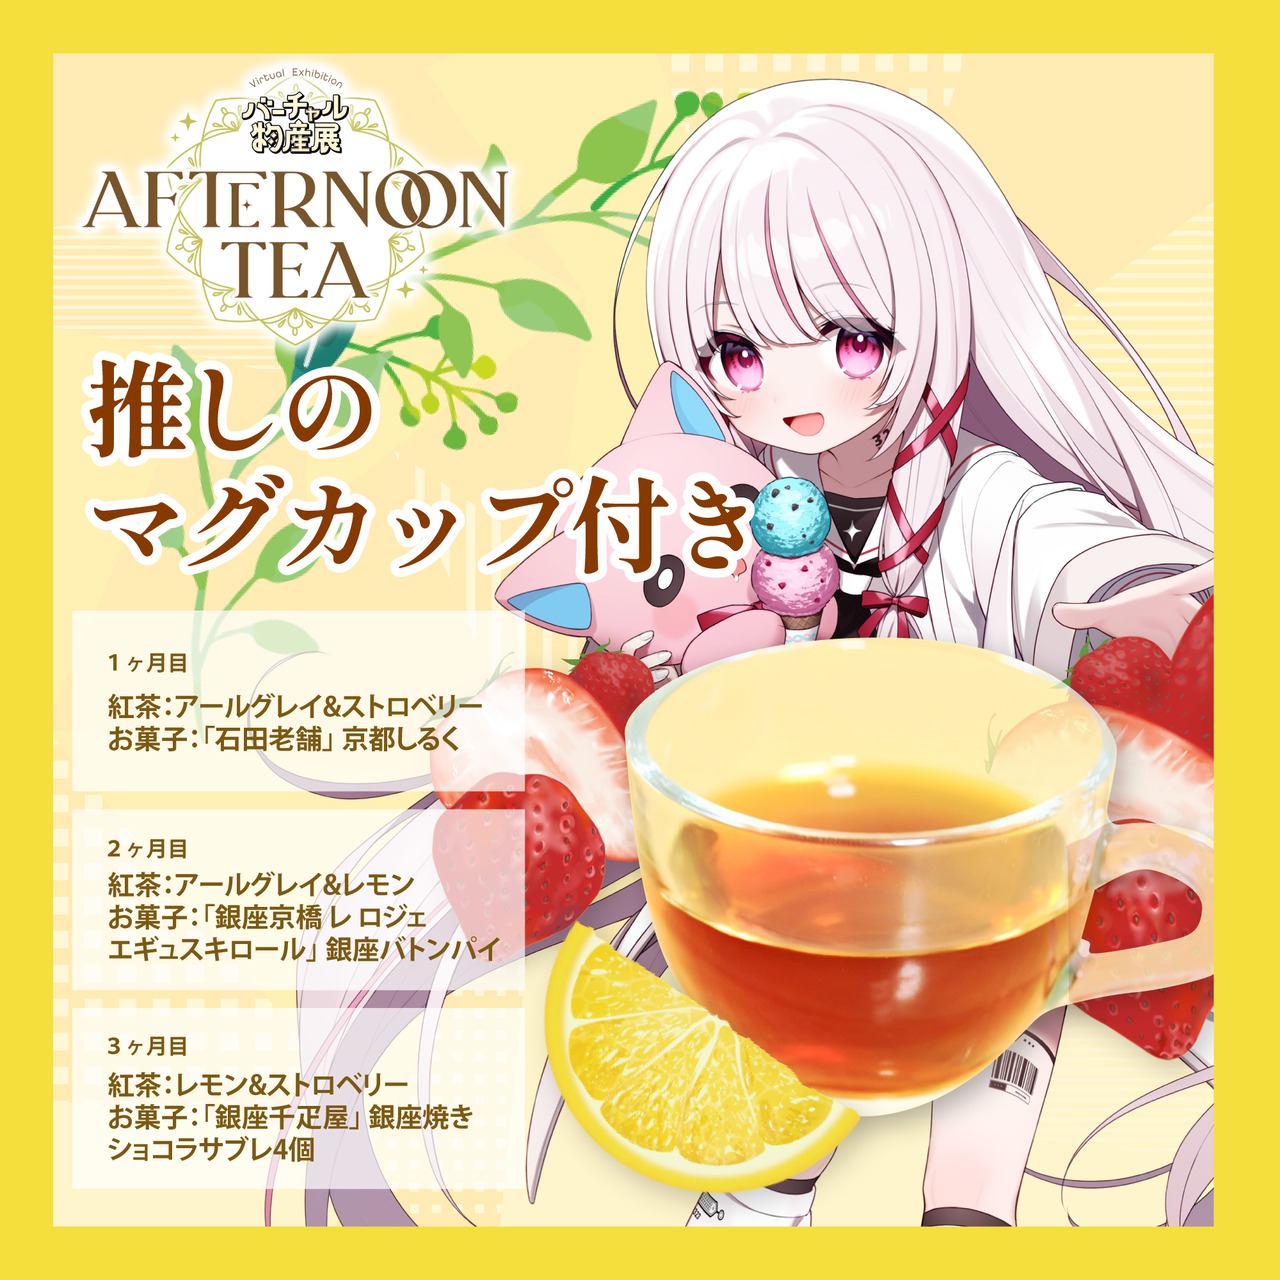 【323(みすみ)】バーチャル物産展 〜AFTERNOON TEA〜